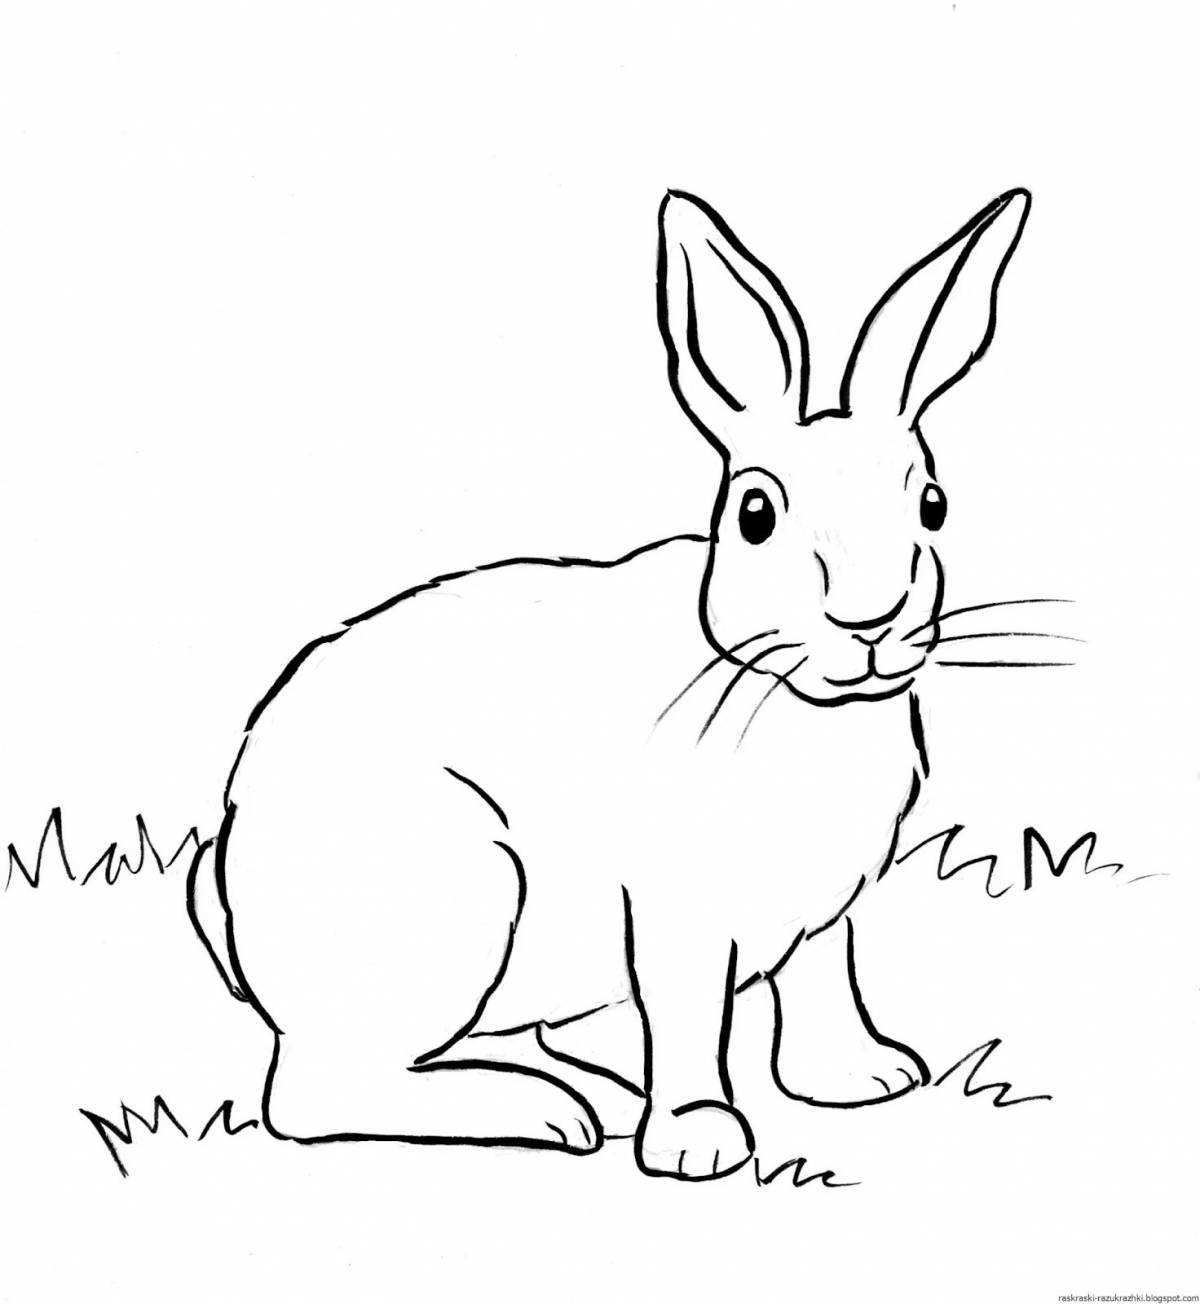 Loving rabbit coloring book